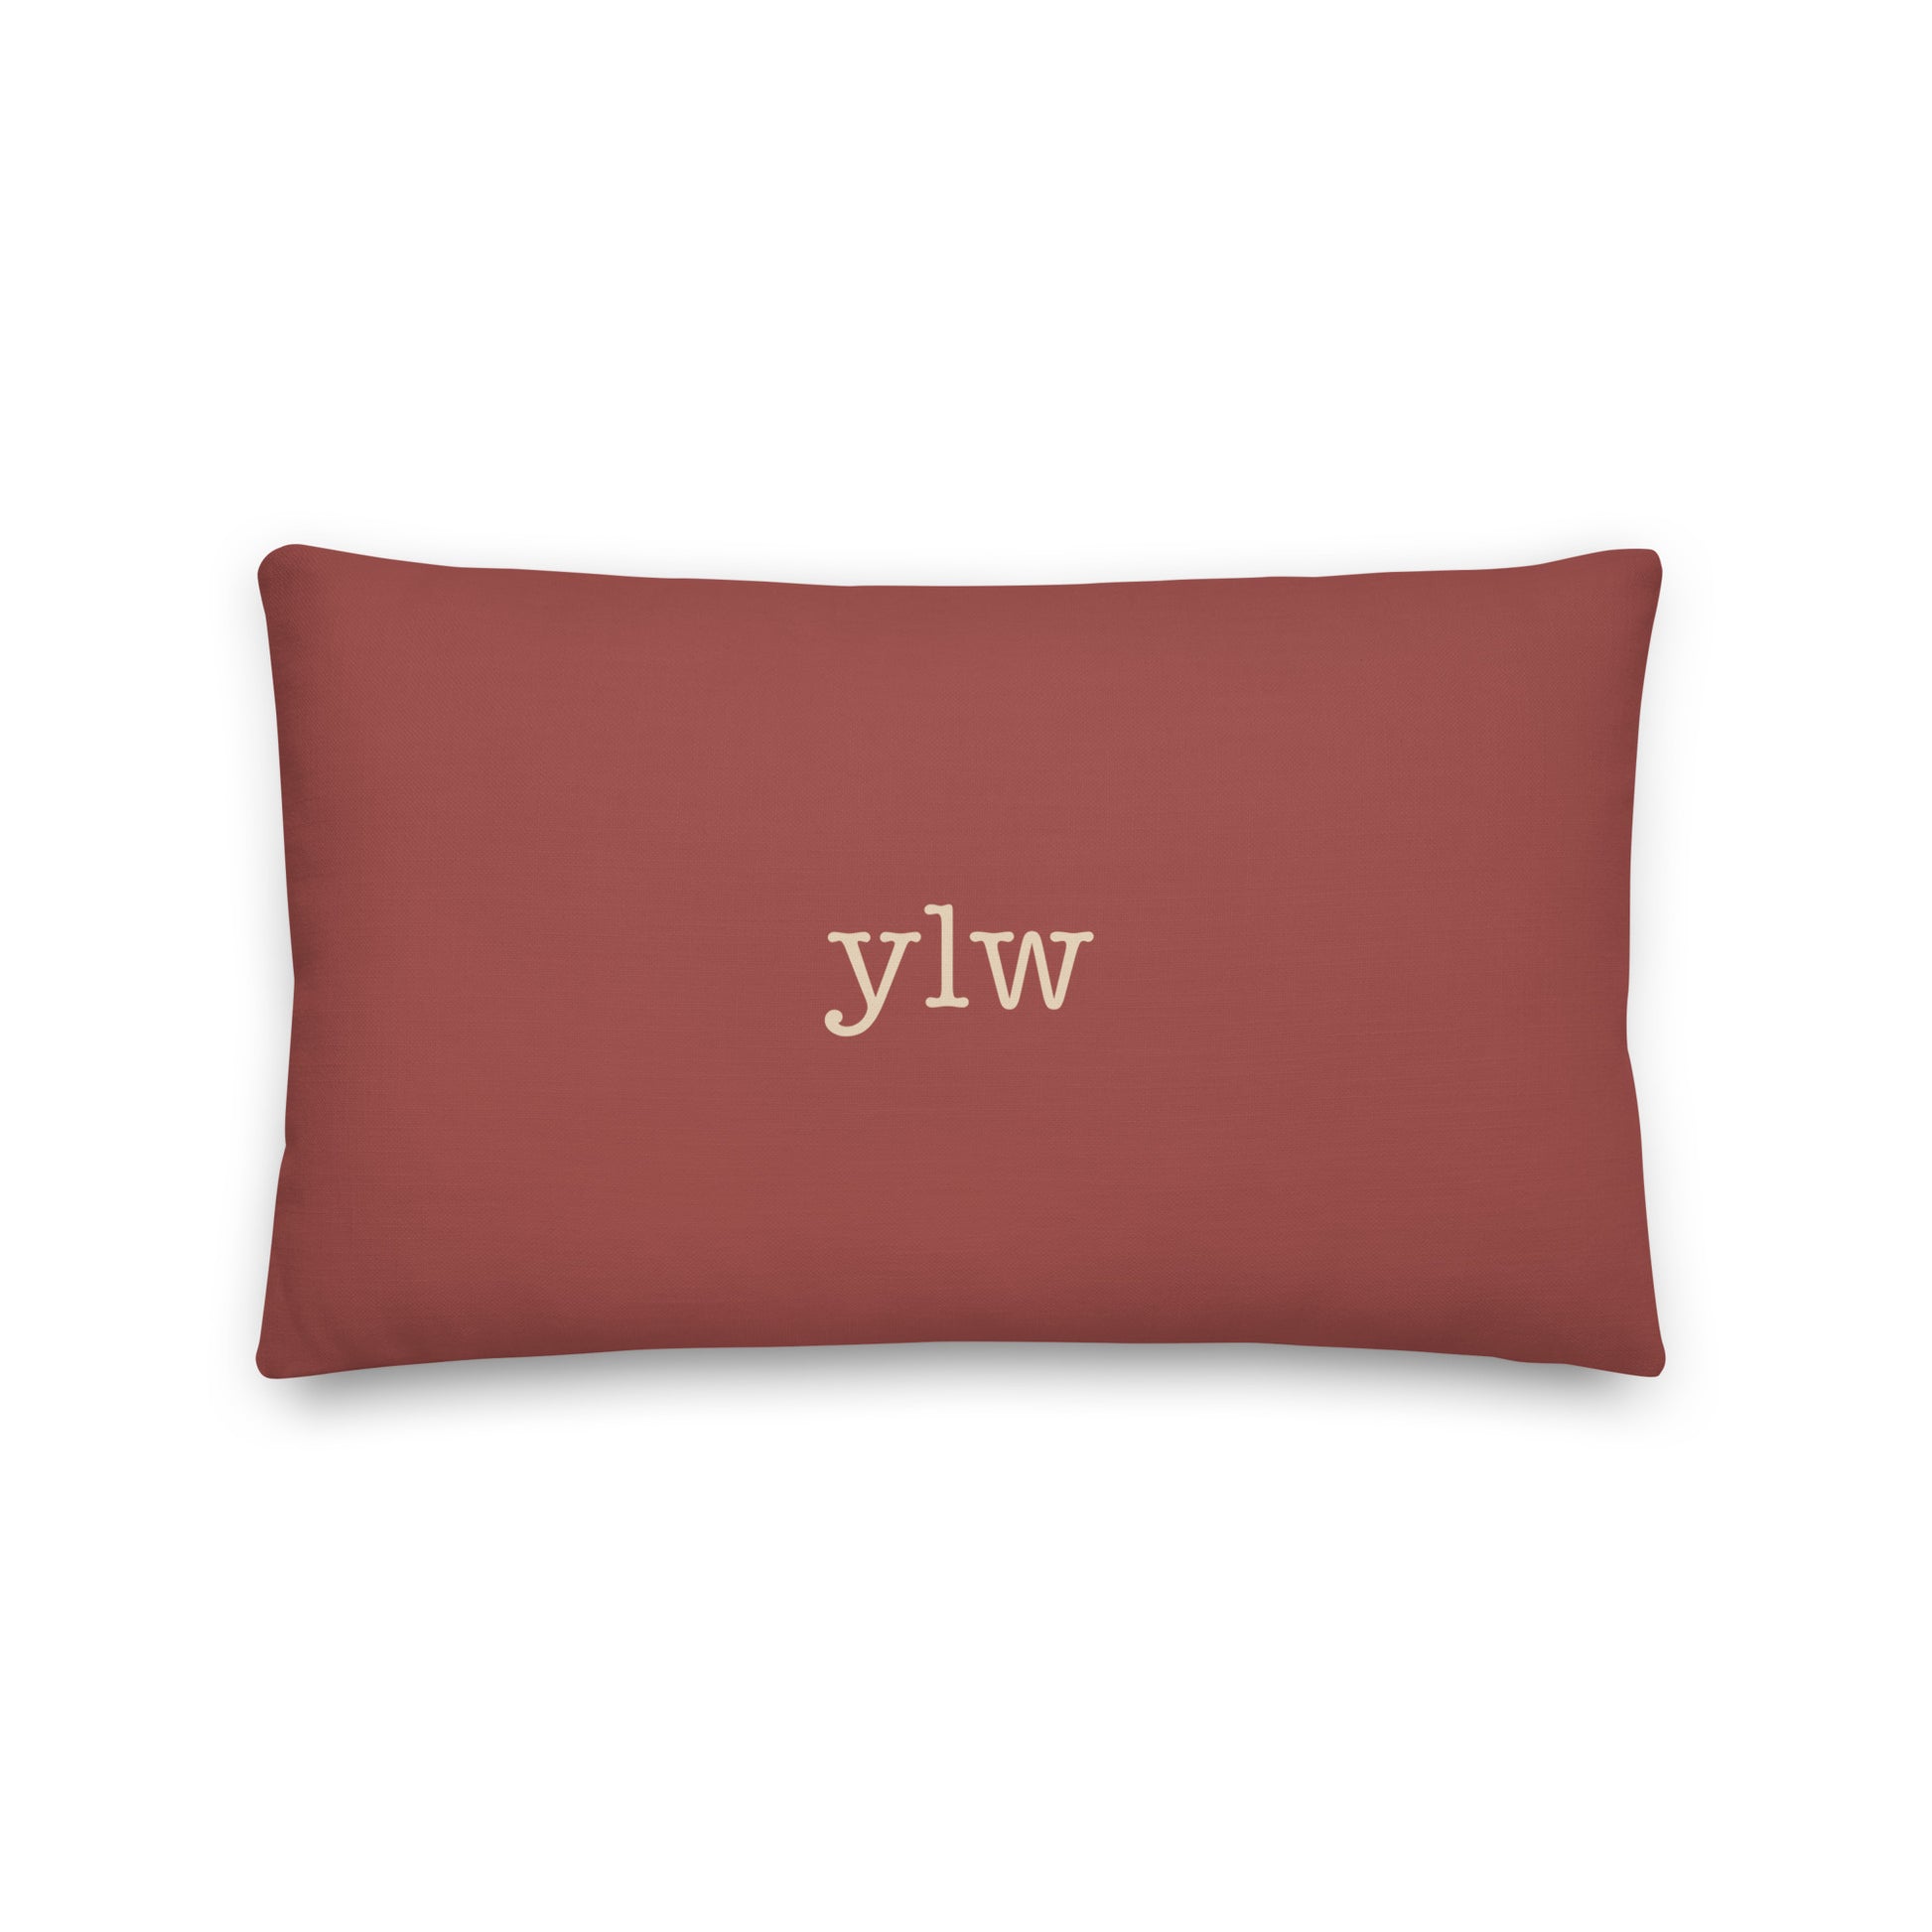 Typewriter Pillow - Terra Cotta • YLW Kelowna • YHM Designs - Image 02